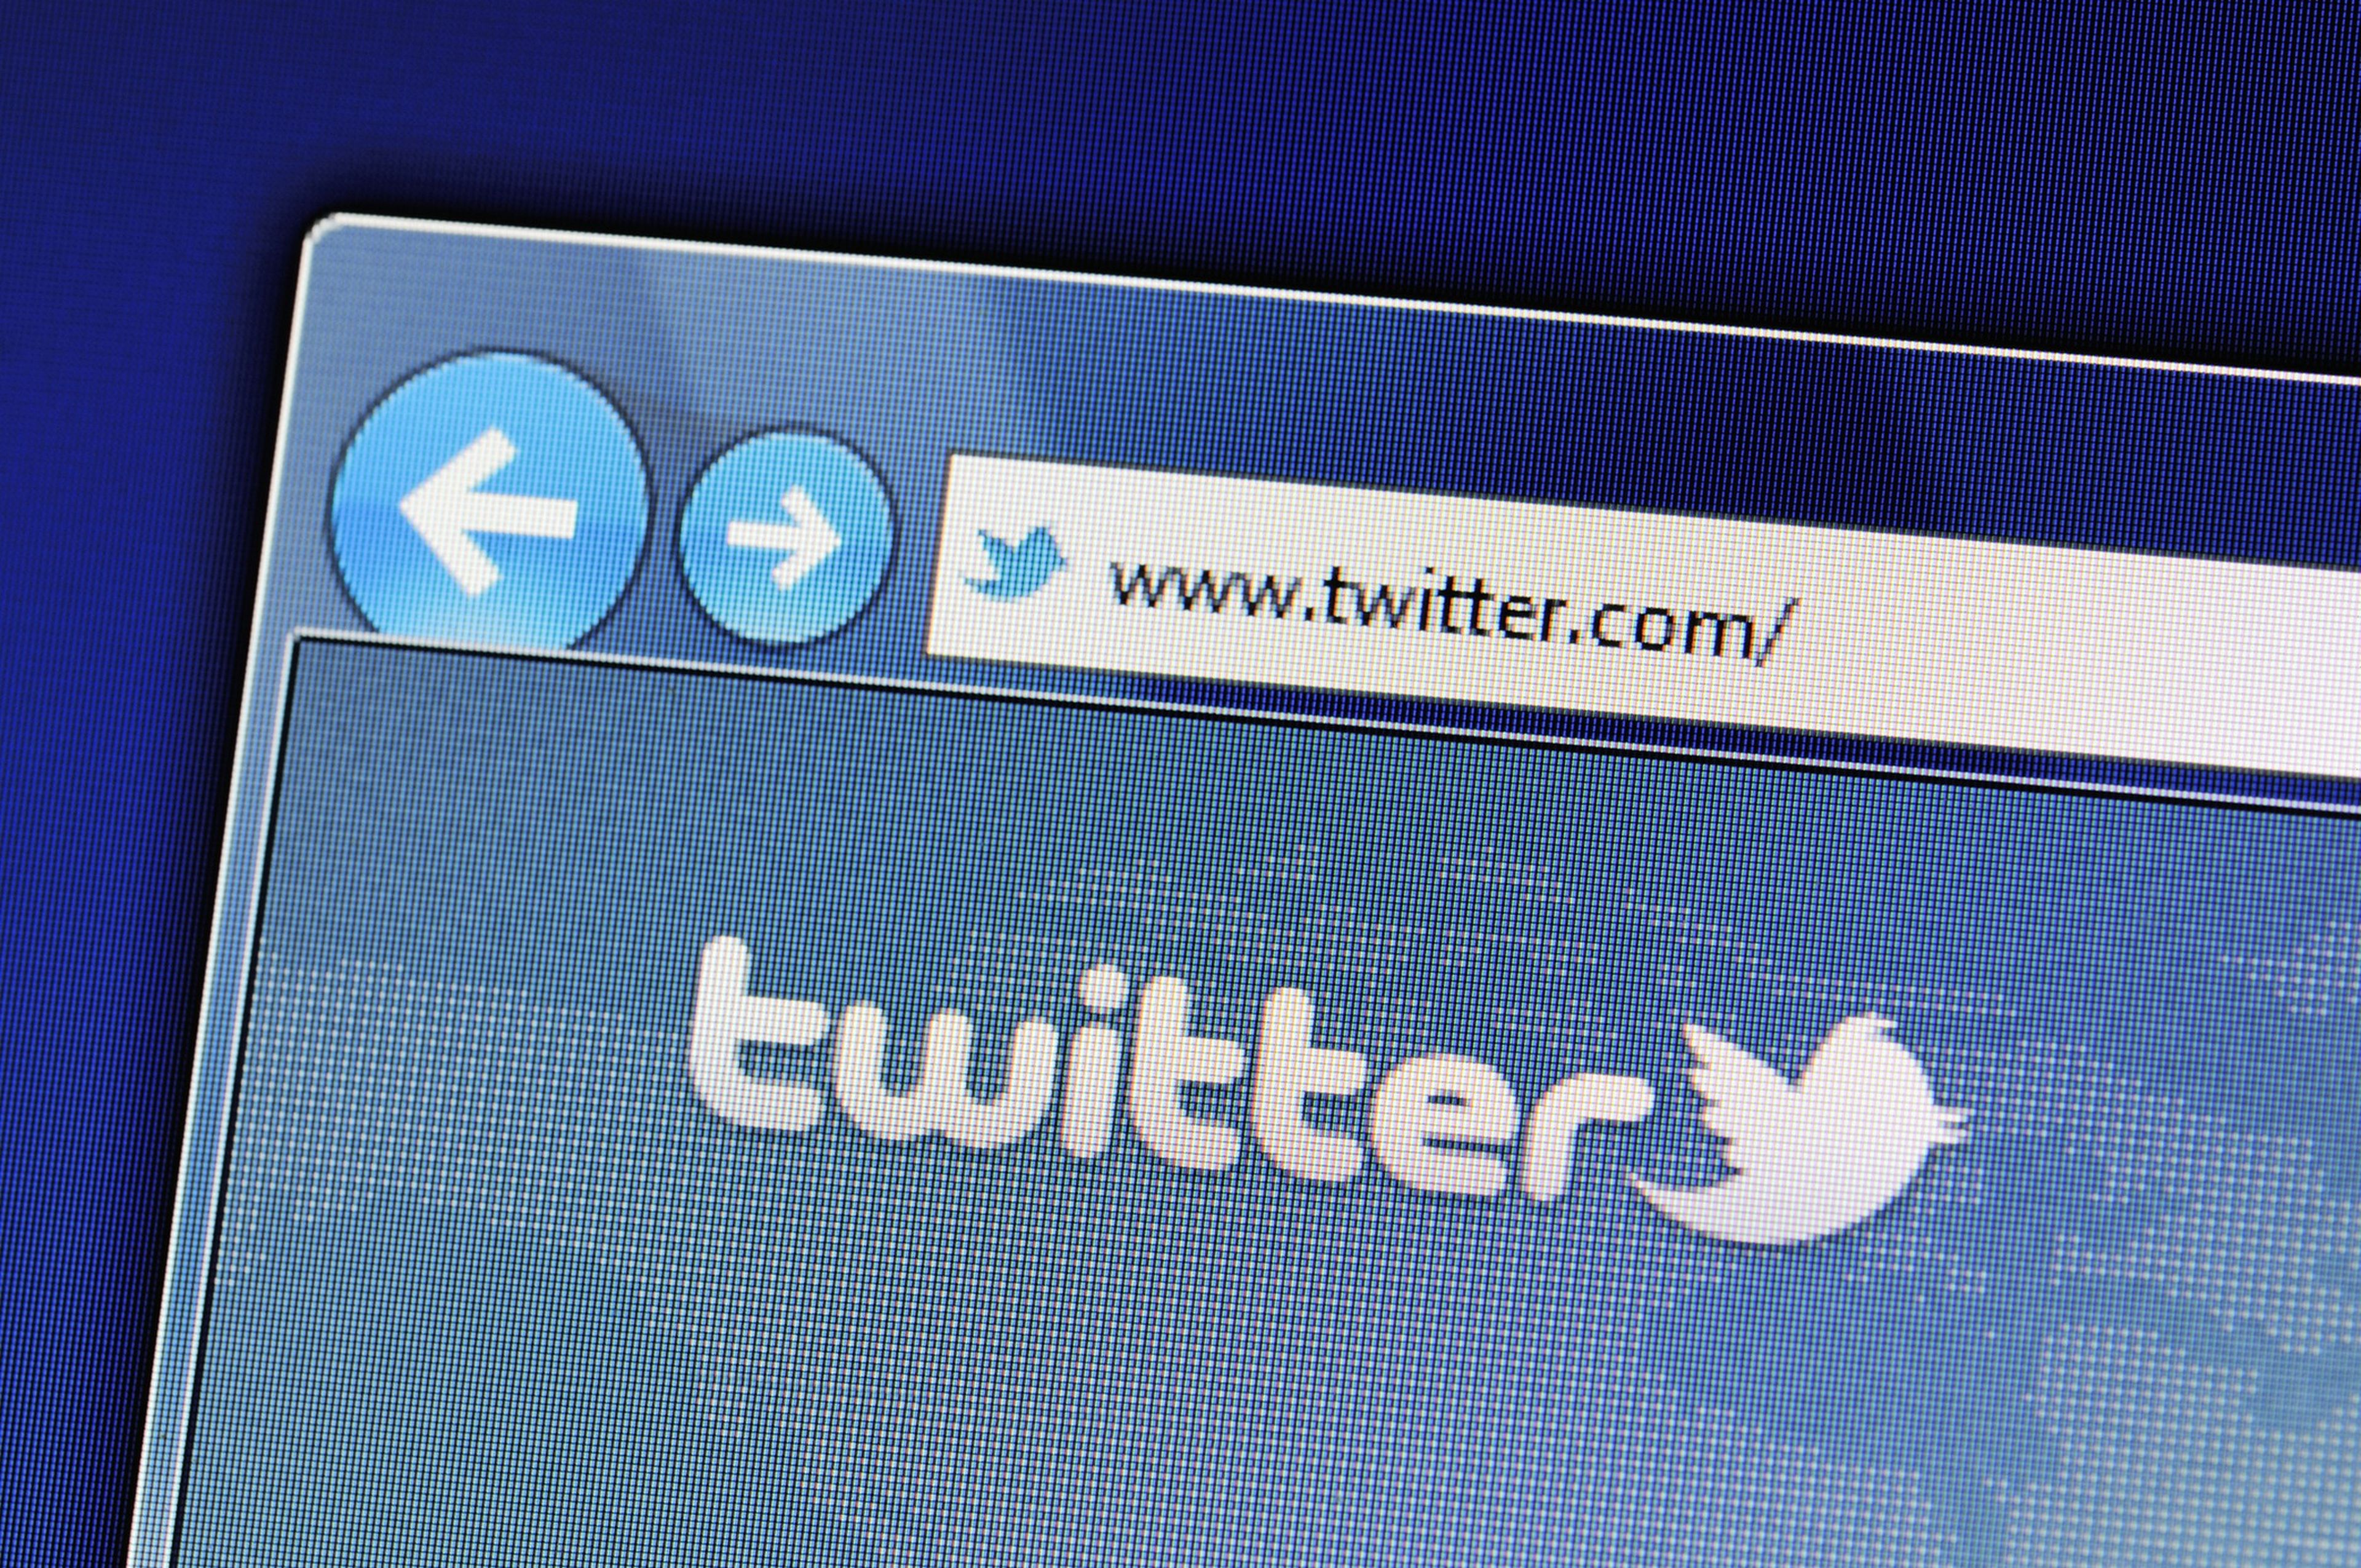 Twitter prohíbe las cuentas que promocionen todas estas redes sociales, incluyendo Facebook e Instagram